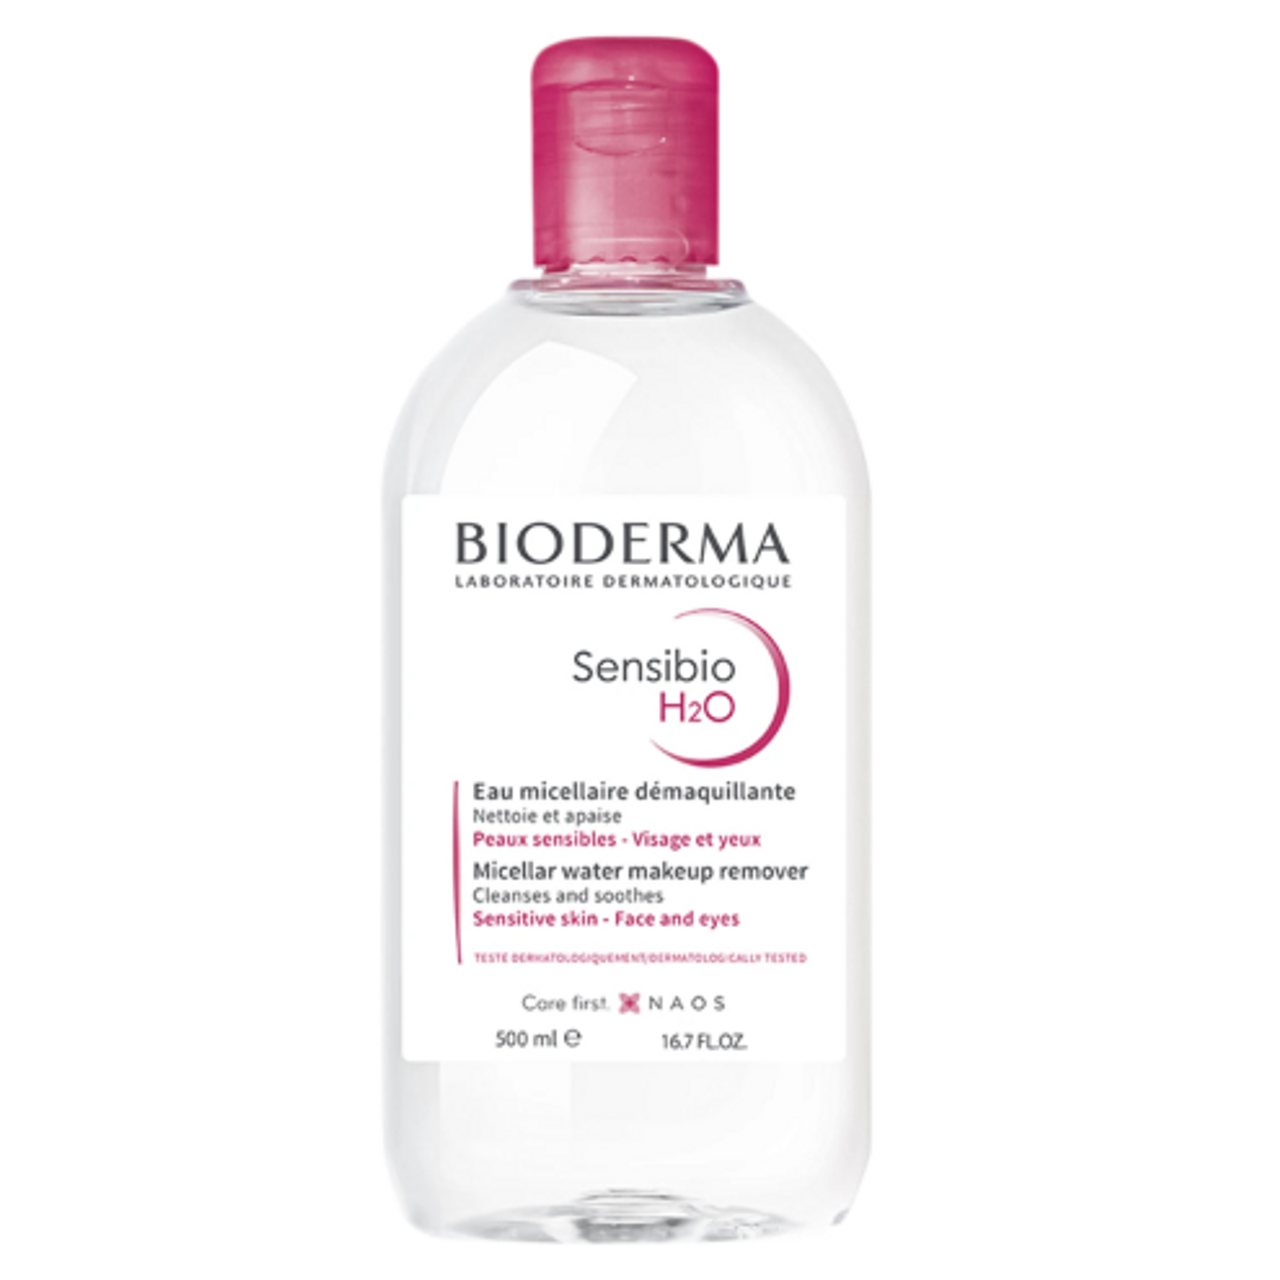 Bioderma Sensibio Foaming Gel Foaming Cleanser & Makeup Remover, 500 ml